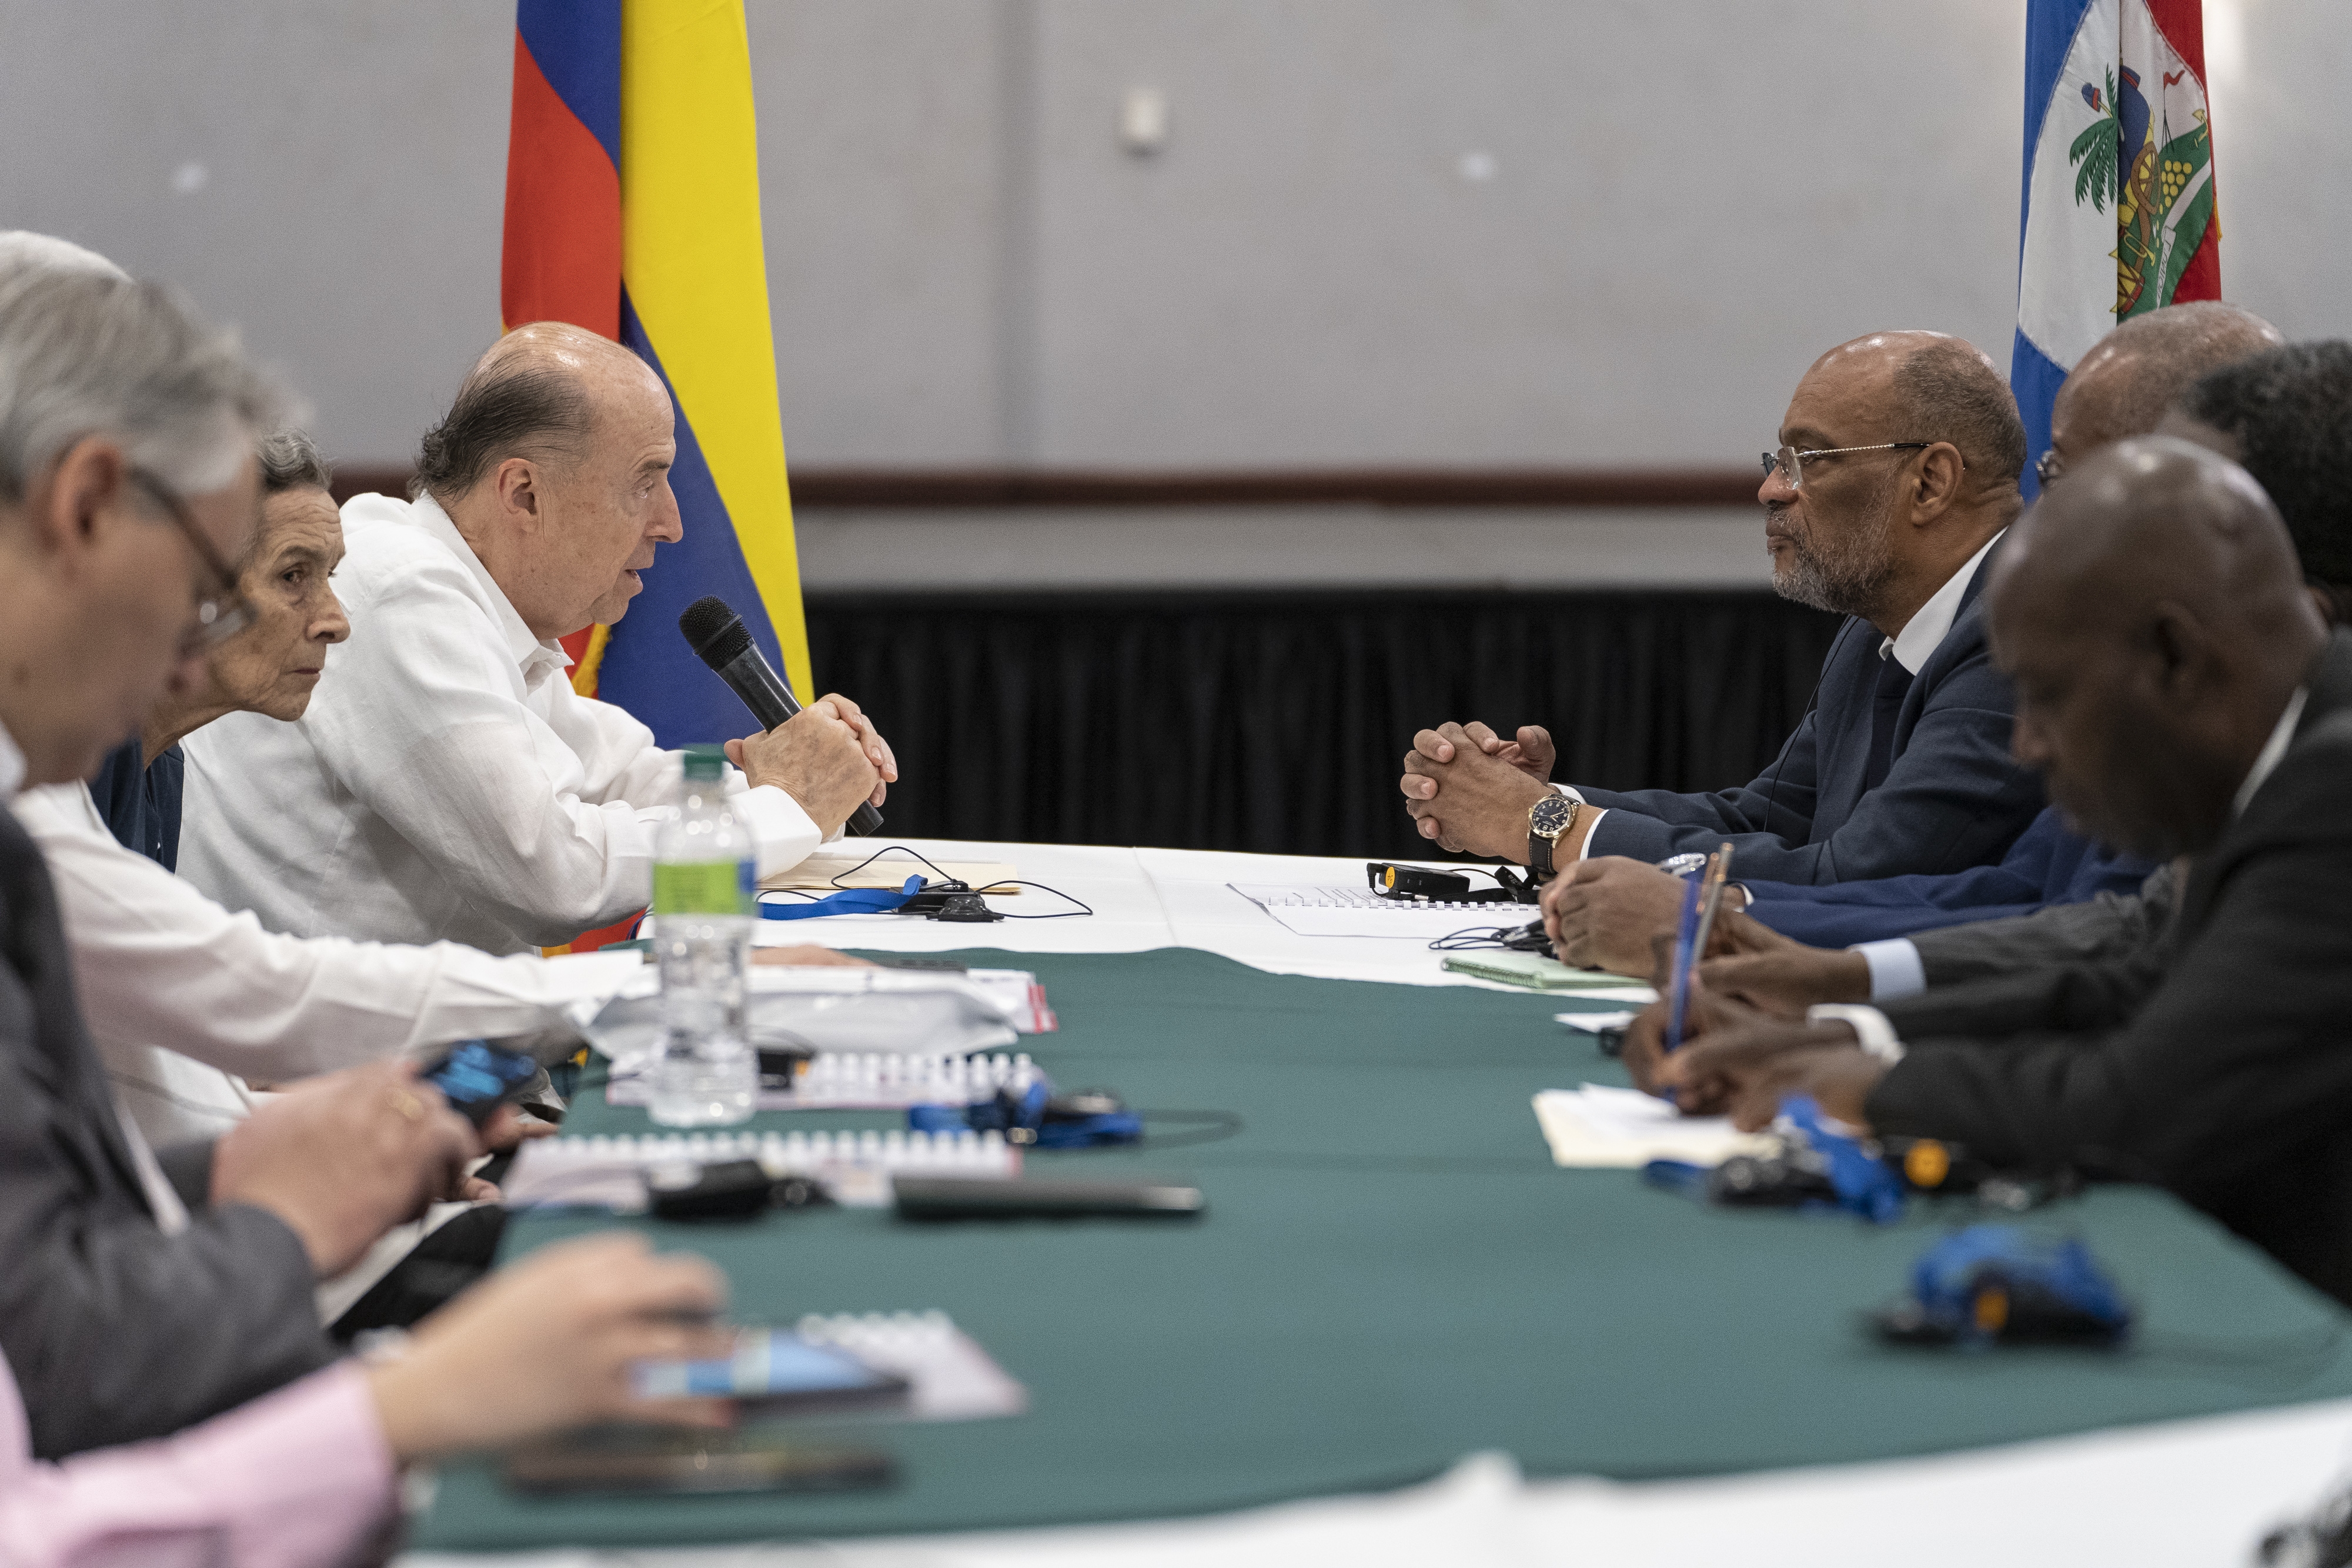 Haití reconoce la experiencia de Colombia en construcción de paz y justicia y ambos países se proponen fortalecer la cooperación en estos y otros asuntos